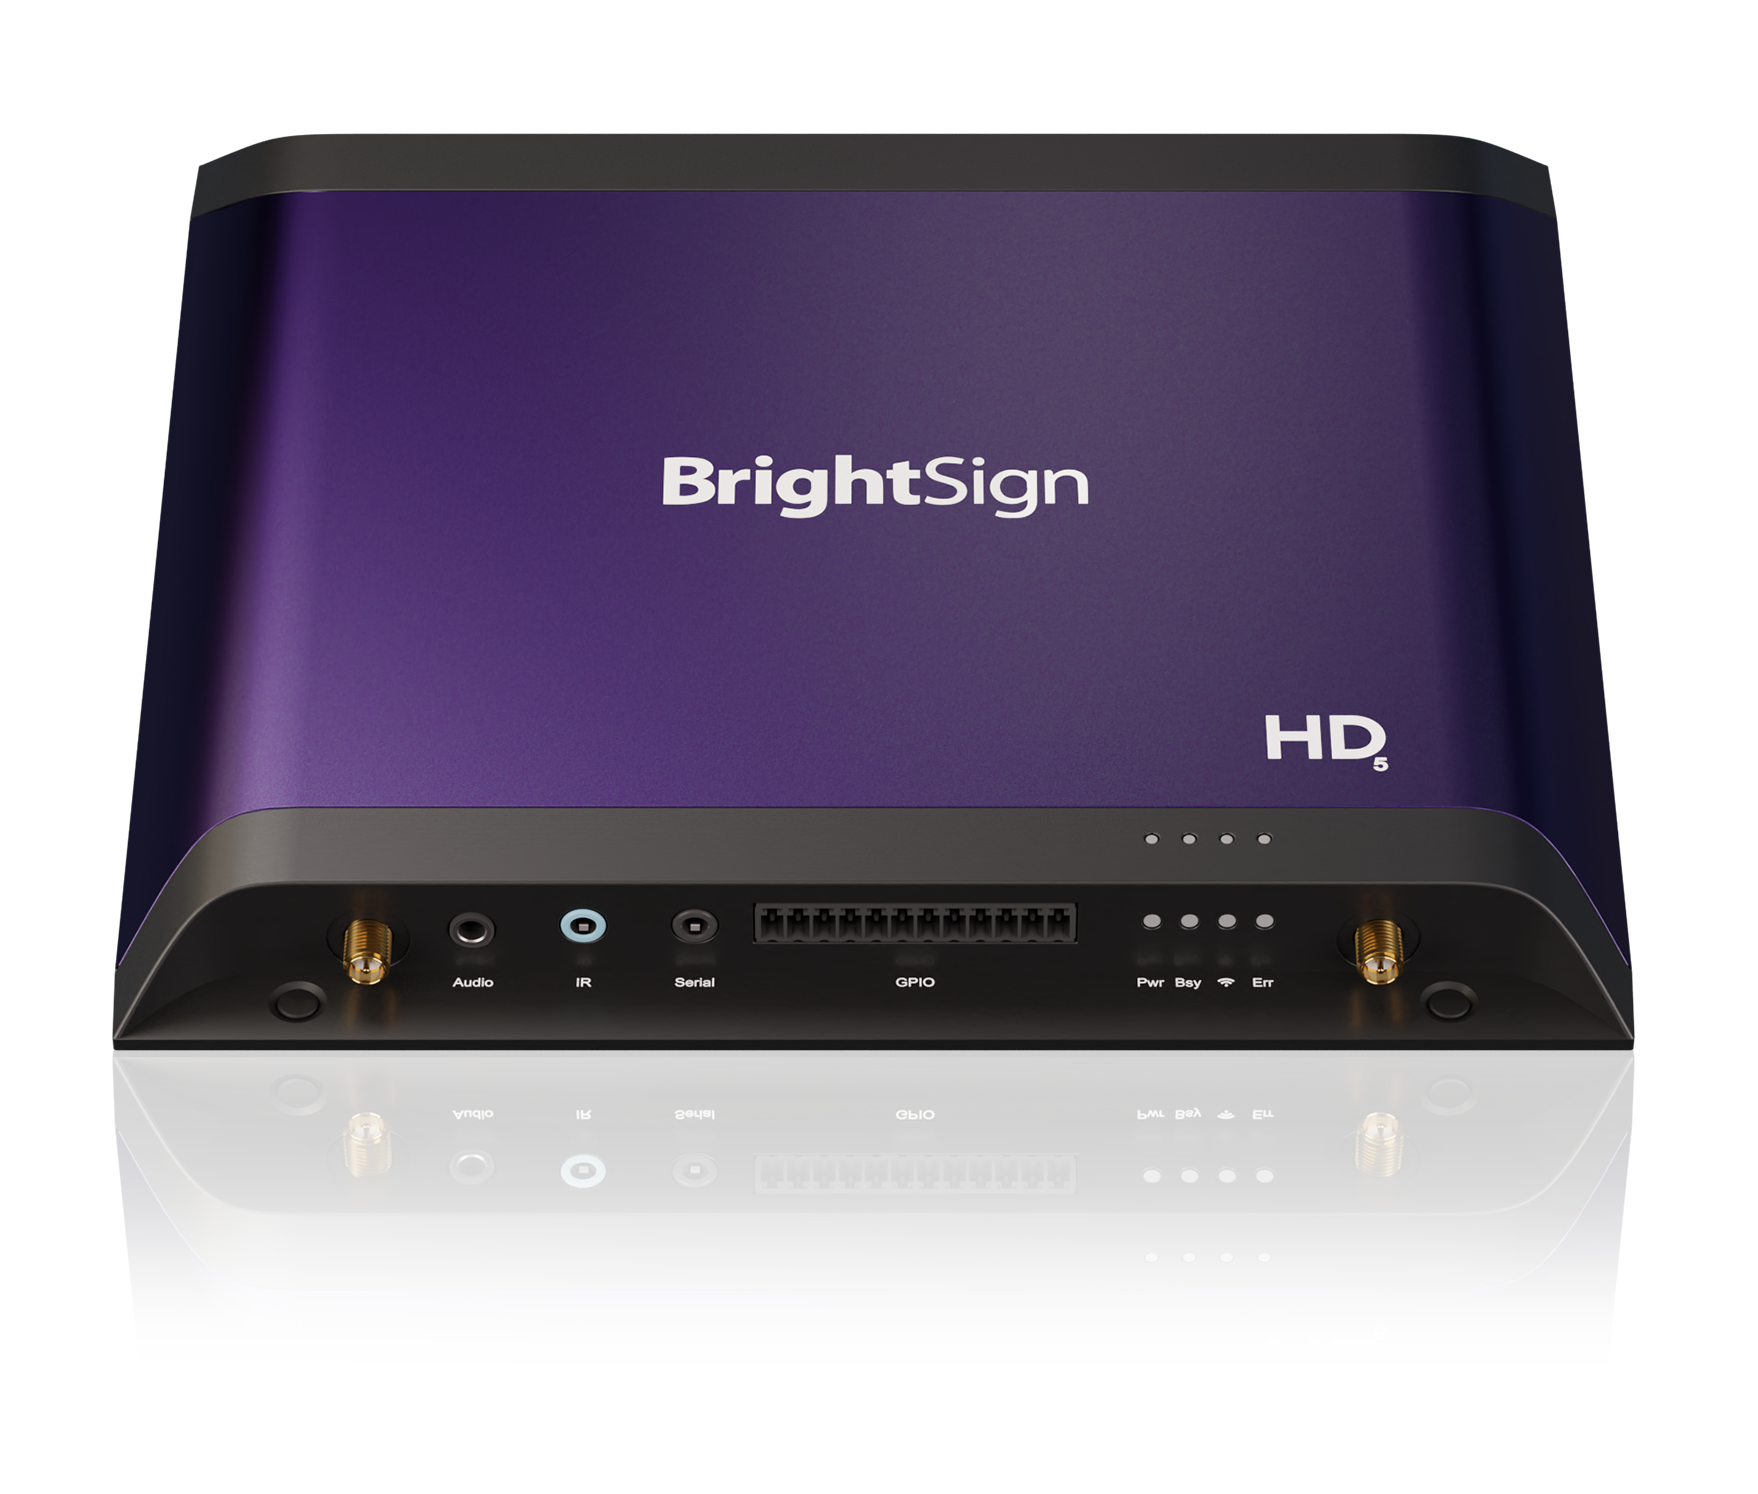 Immagine del prodotto dei lettori di segnaletica digitale BrightSign XC5 della serie 5 di BrightSign